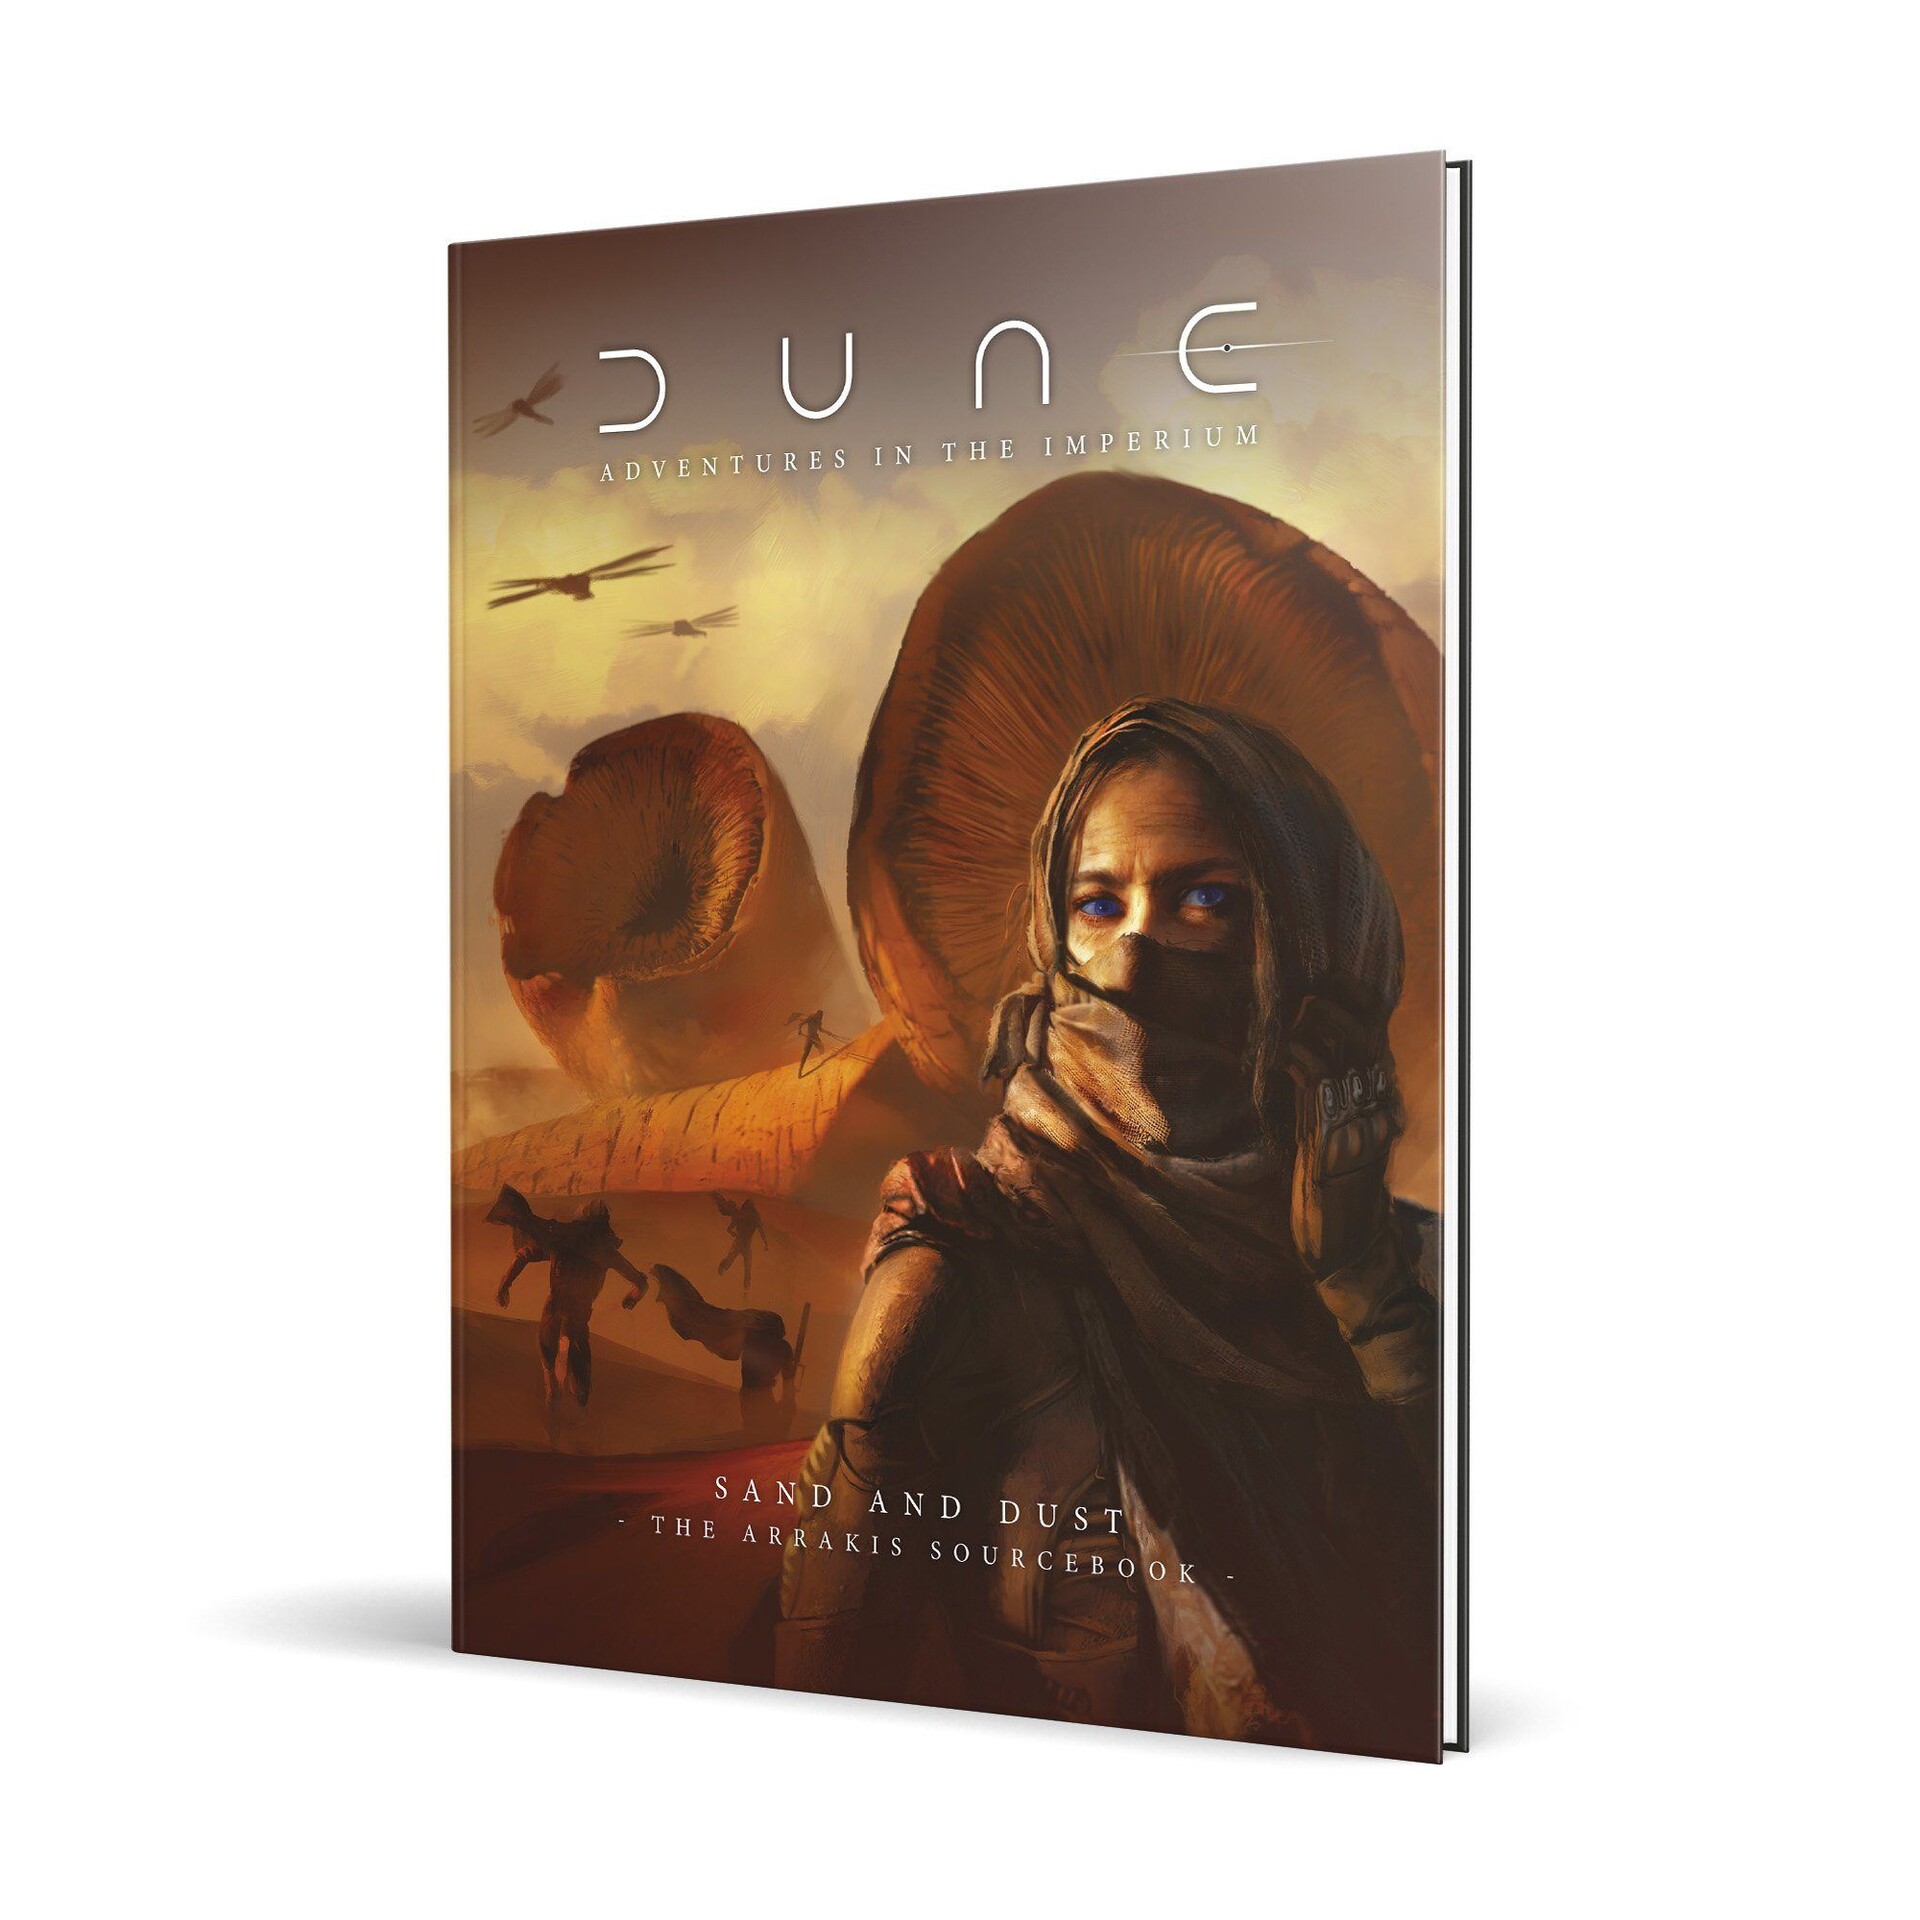 Dune adventures in the imperium. Dune II обложка. Dune: Spice Wars обложка. Dune - Adventures in the IMPERIUM: Sand and dustpdf. Дюна Арракис картинки.